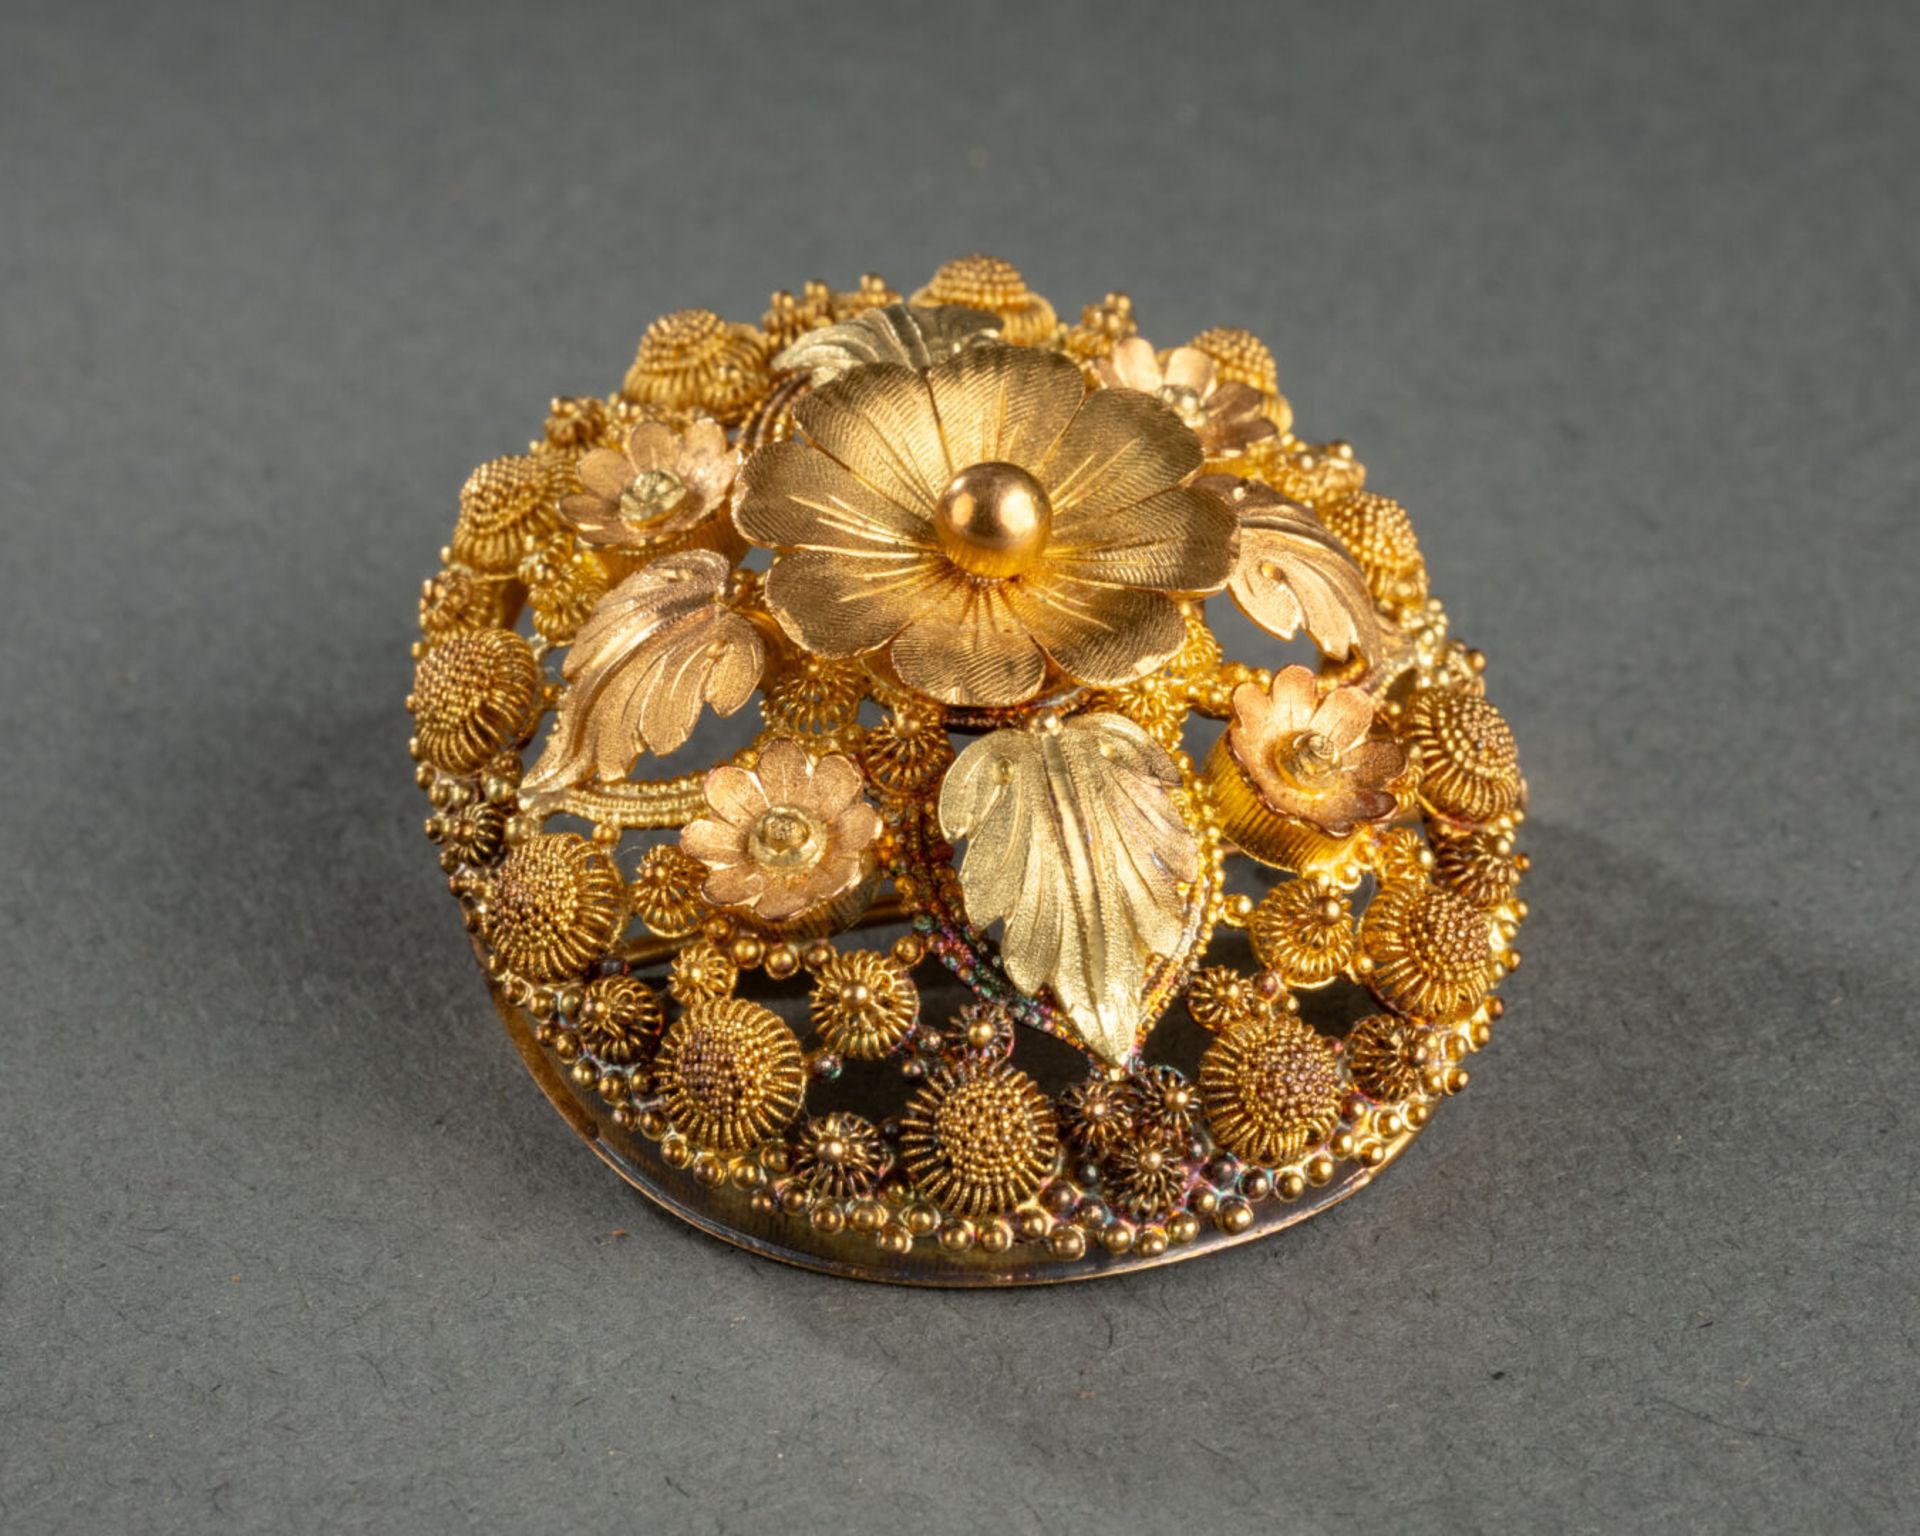 BROCHE ovale à motifs de fleurs et feuillages Métal doré, ciselé et ajouré H. 4 cm - L. 3,5 cm - Image 4 of 4